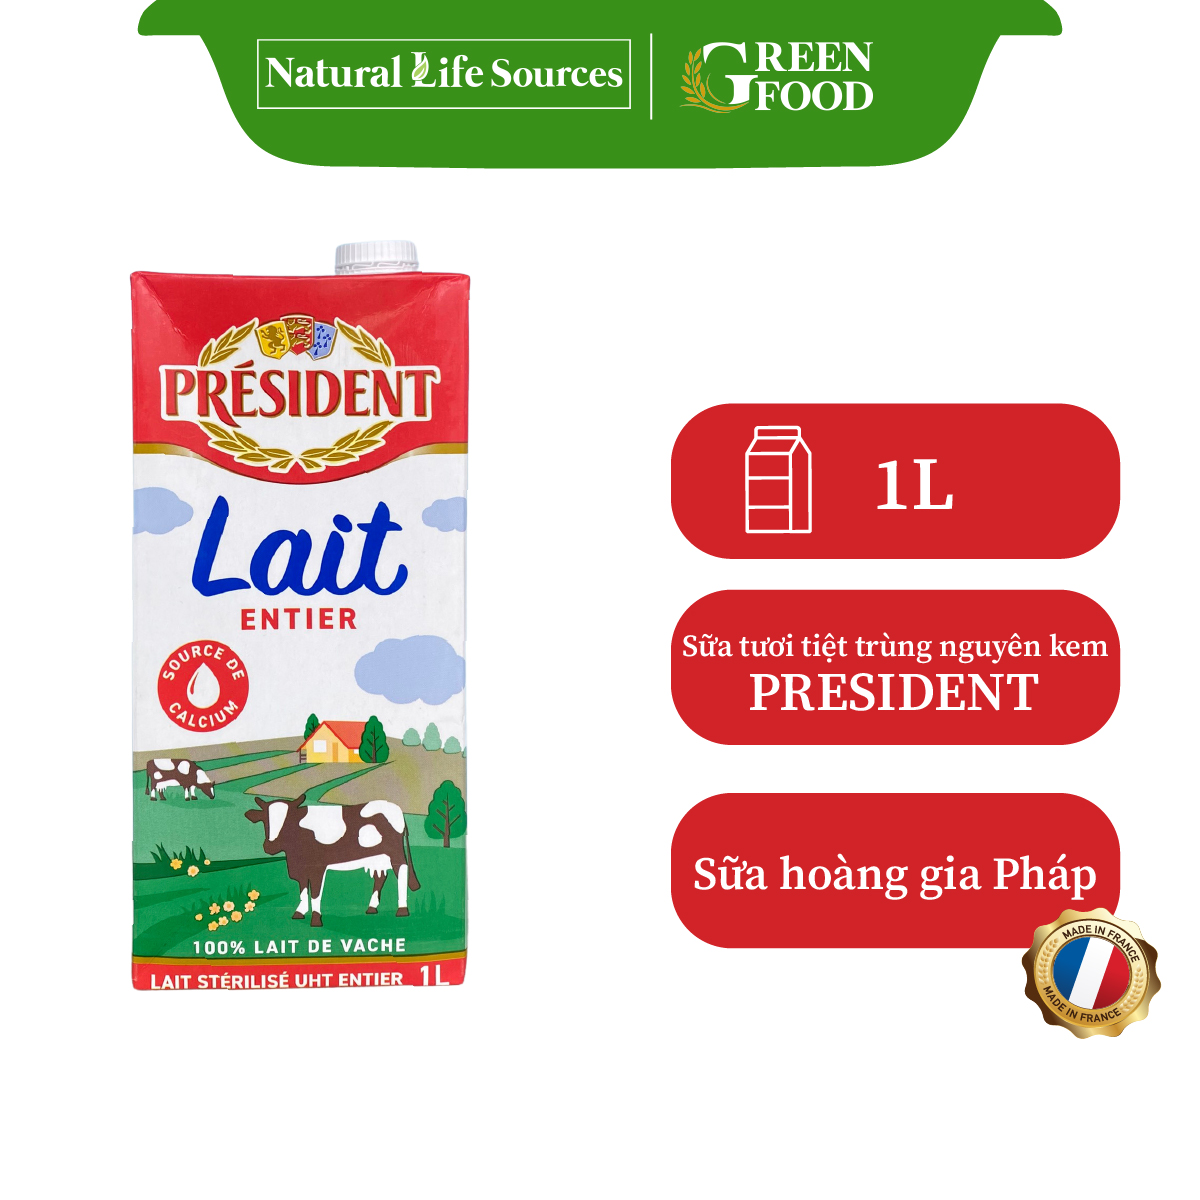 Sữa tươi tiệt trùng nguyên kem cao cấp President không đường | Hộp 1L - Nhập khẩu chính hãng từ Pháp